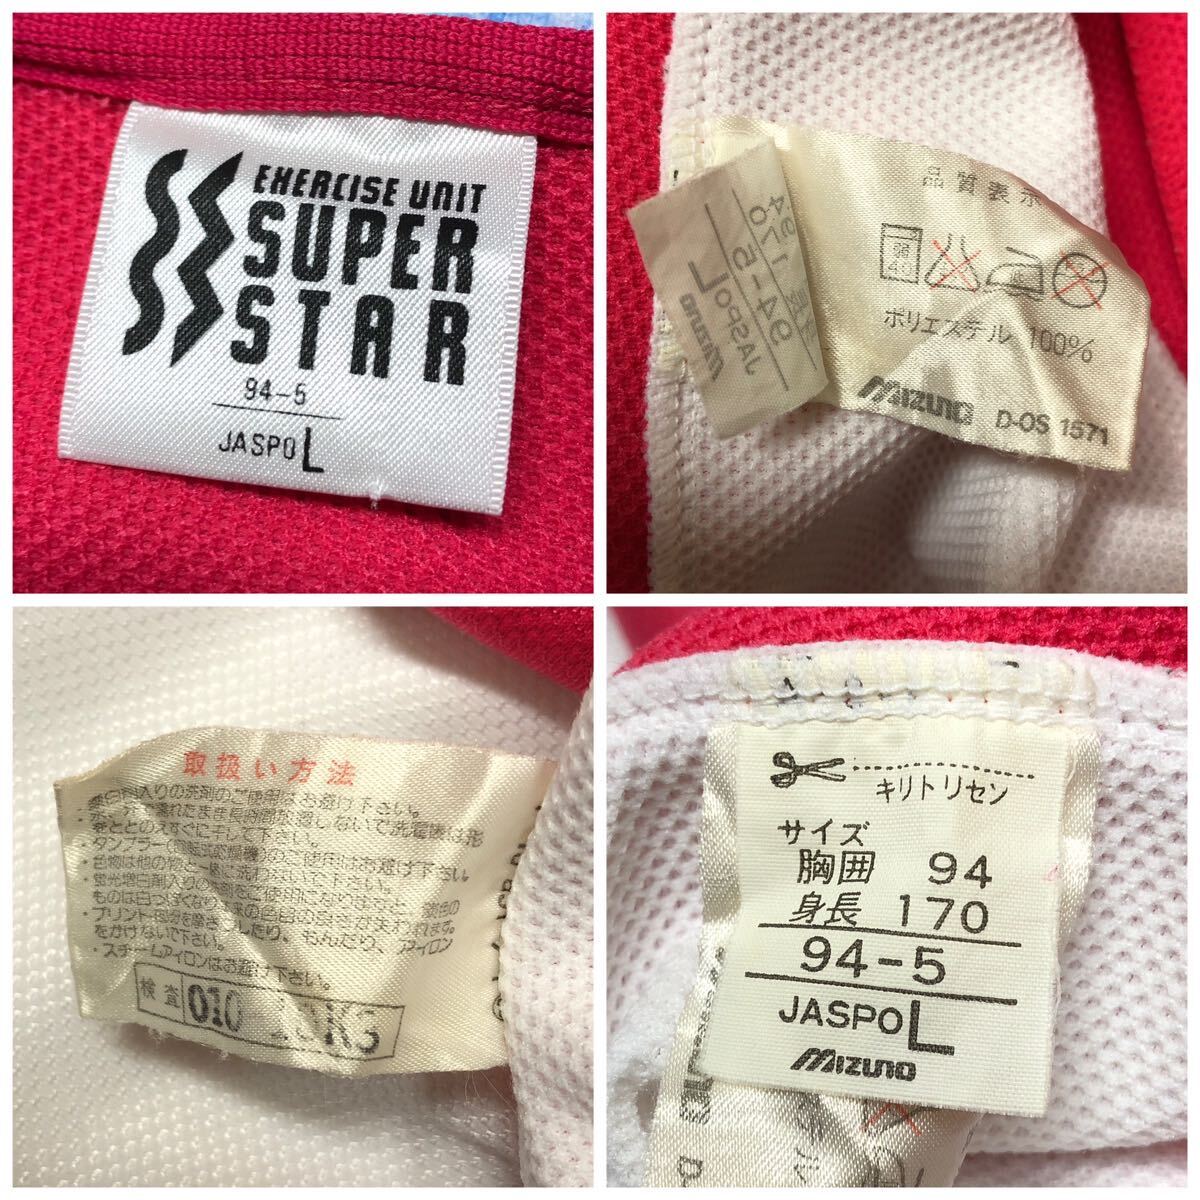 90\'s /SUPER STAR /MIZUNO super Star мужской L длинный рукав джерси жакет спортивная куртка Logo вышивка спорт одежда Vintage б/у одежда 